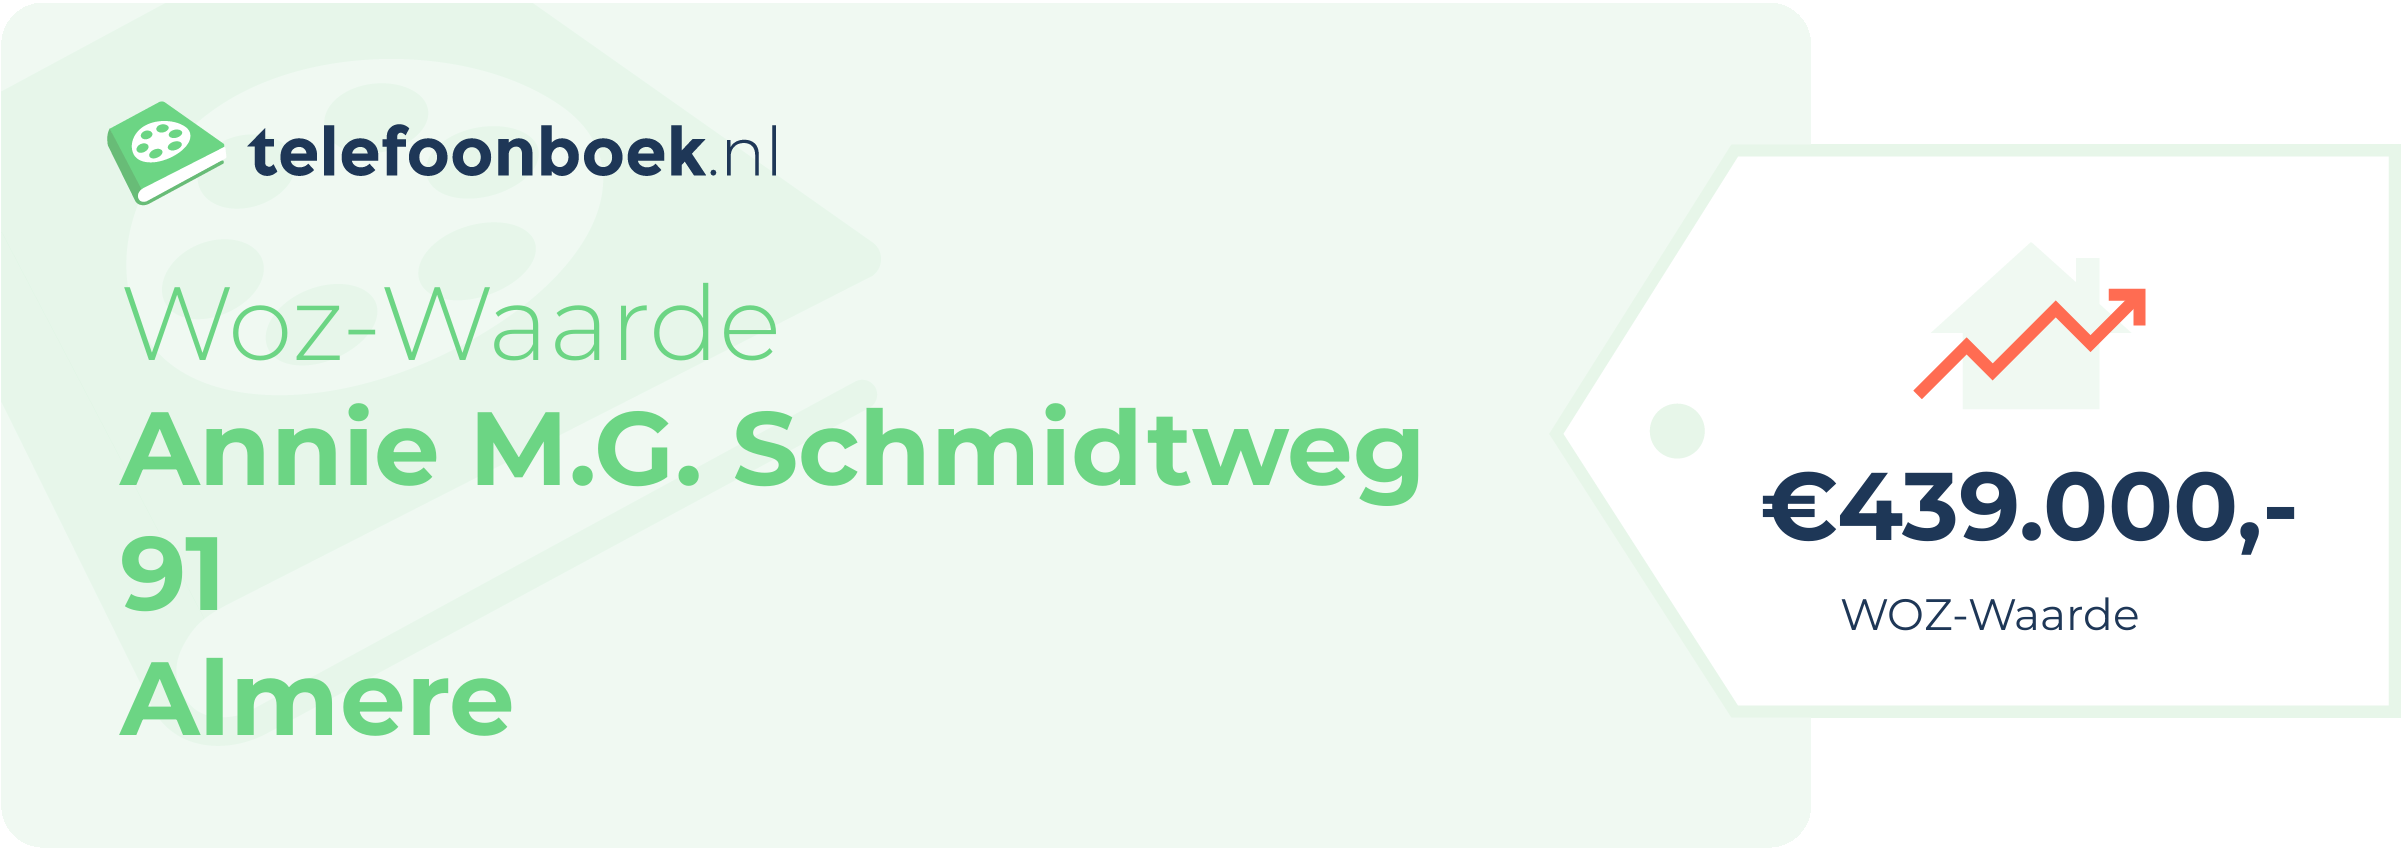 WOZ-waarde Annie M.G. Schmidtweg 91 Almere